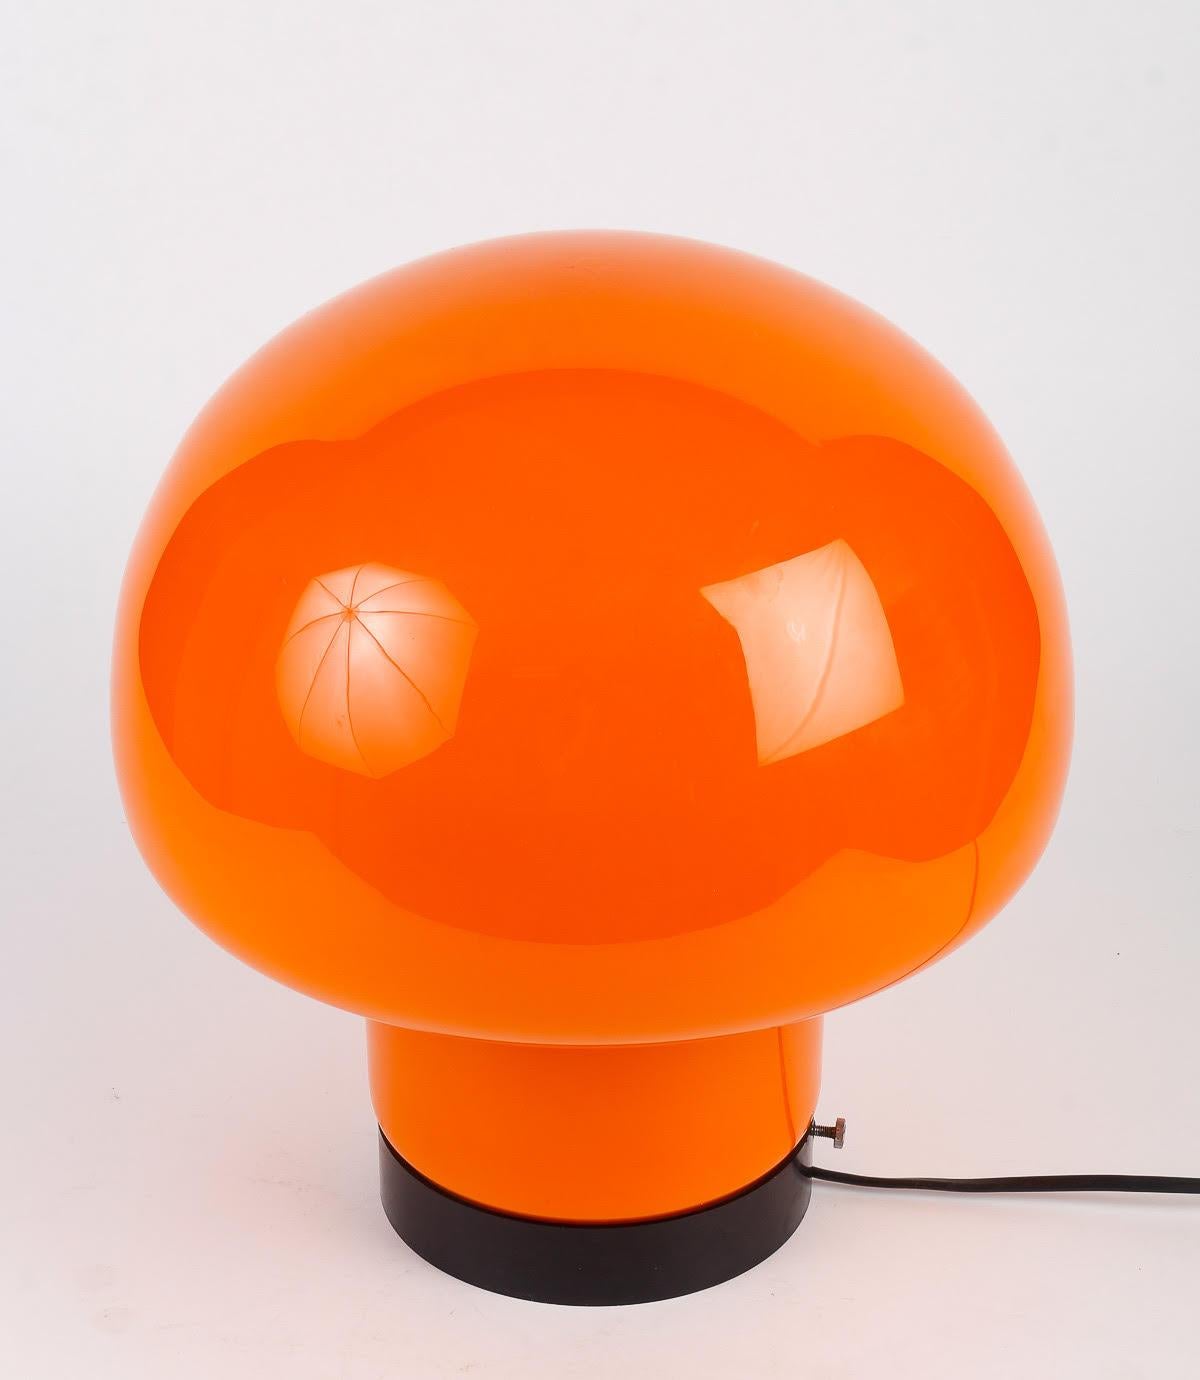 Mushroom-Lampe 1970er Jahre Design.

Pilzlampe aus den 1970er Jahren, Teil der Space Age-Bewegung.    
h: 36cm , B: 33cm, T: 15cm